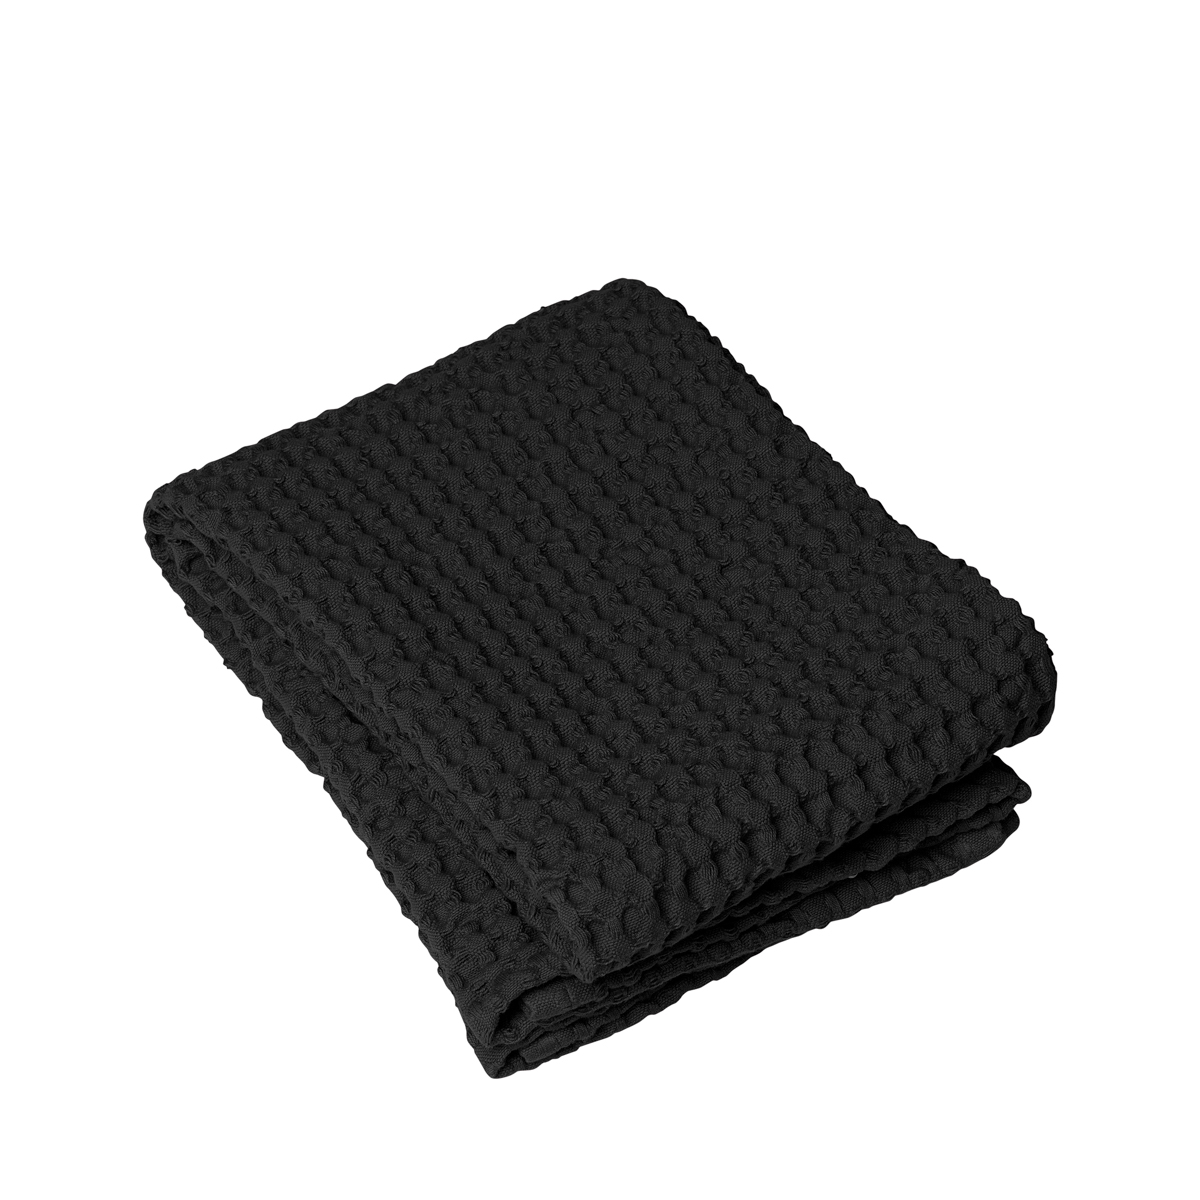 Handtuch -CARO- Black 50 x 100 cm. Material: Baumwolle. Von Blomus.